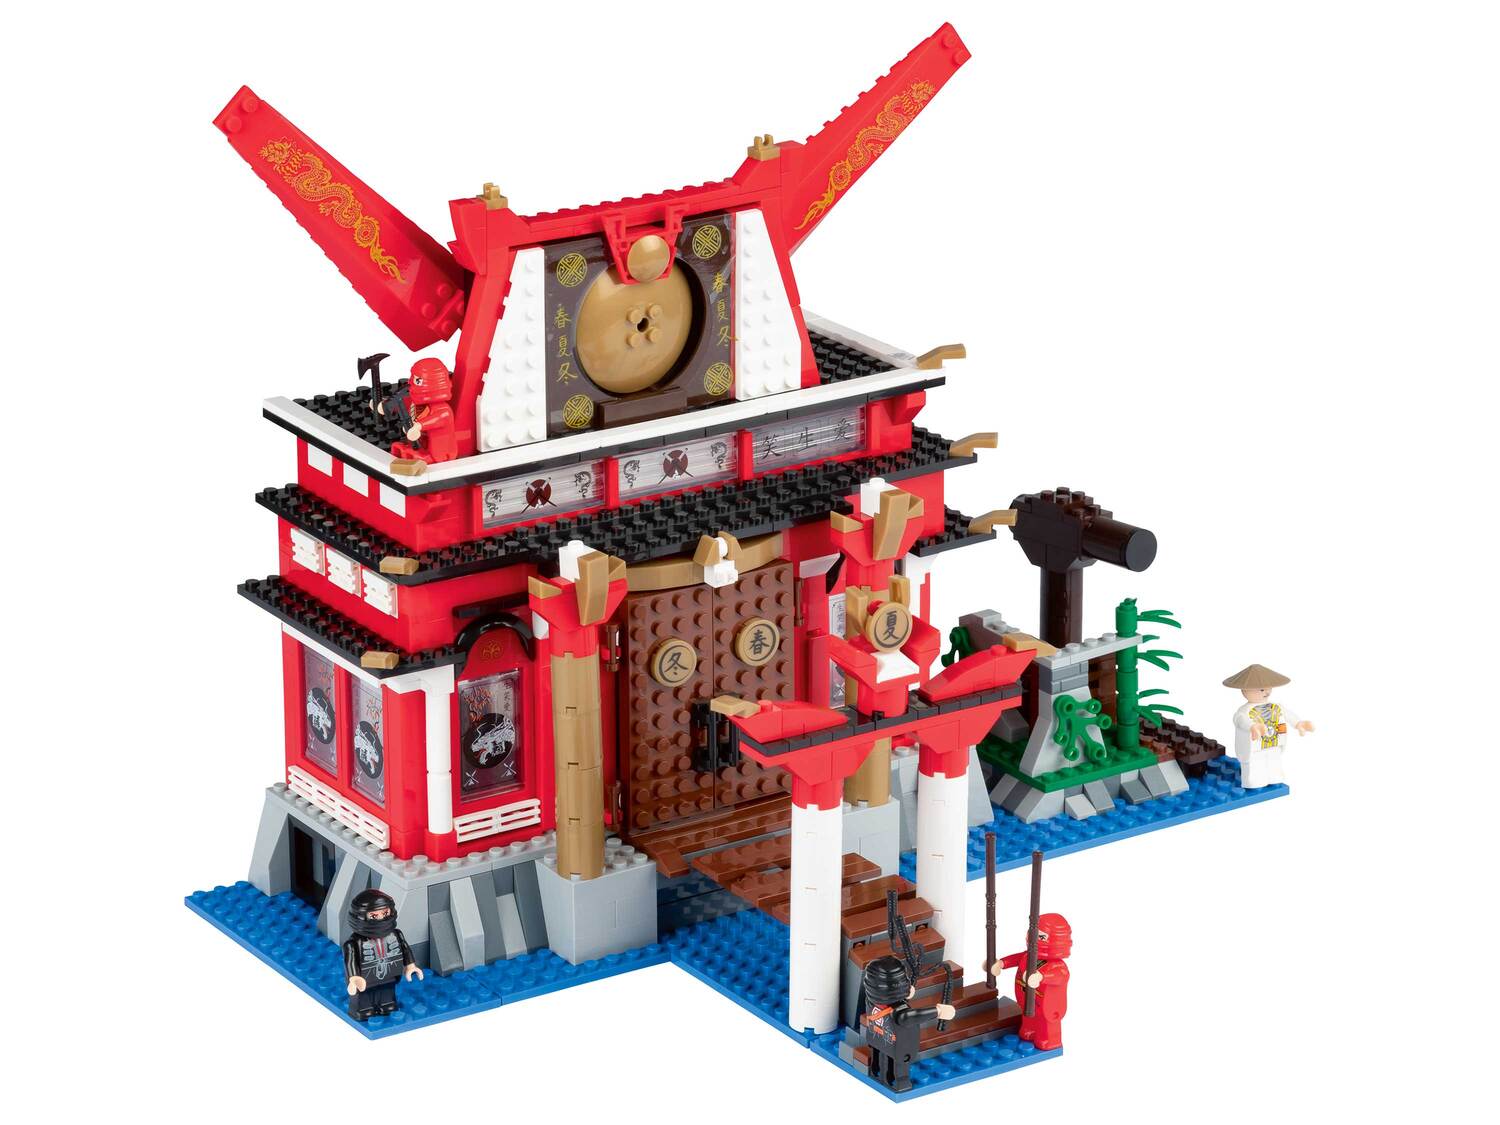 Set blocs de construction , le prix 23.99 &#8364; 
- Au choix :
- Temple fantastique ...